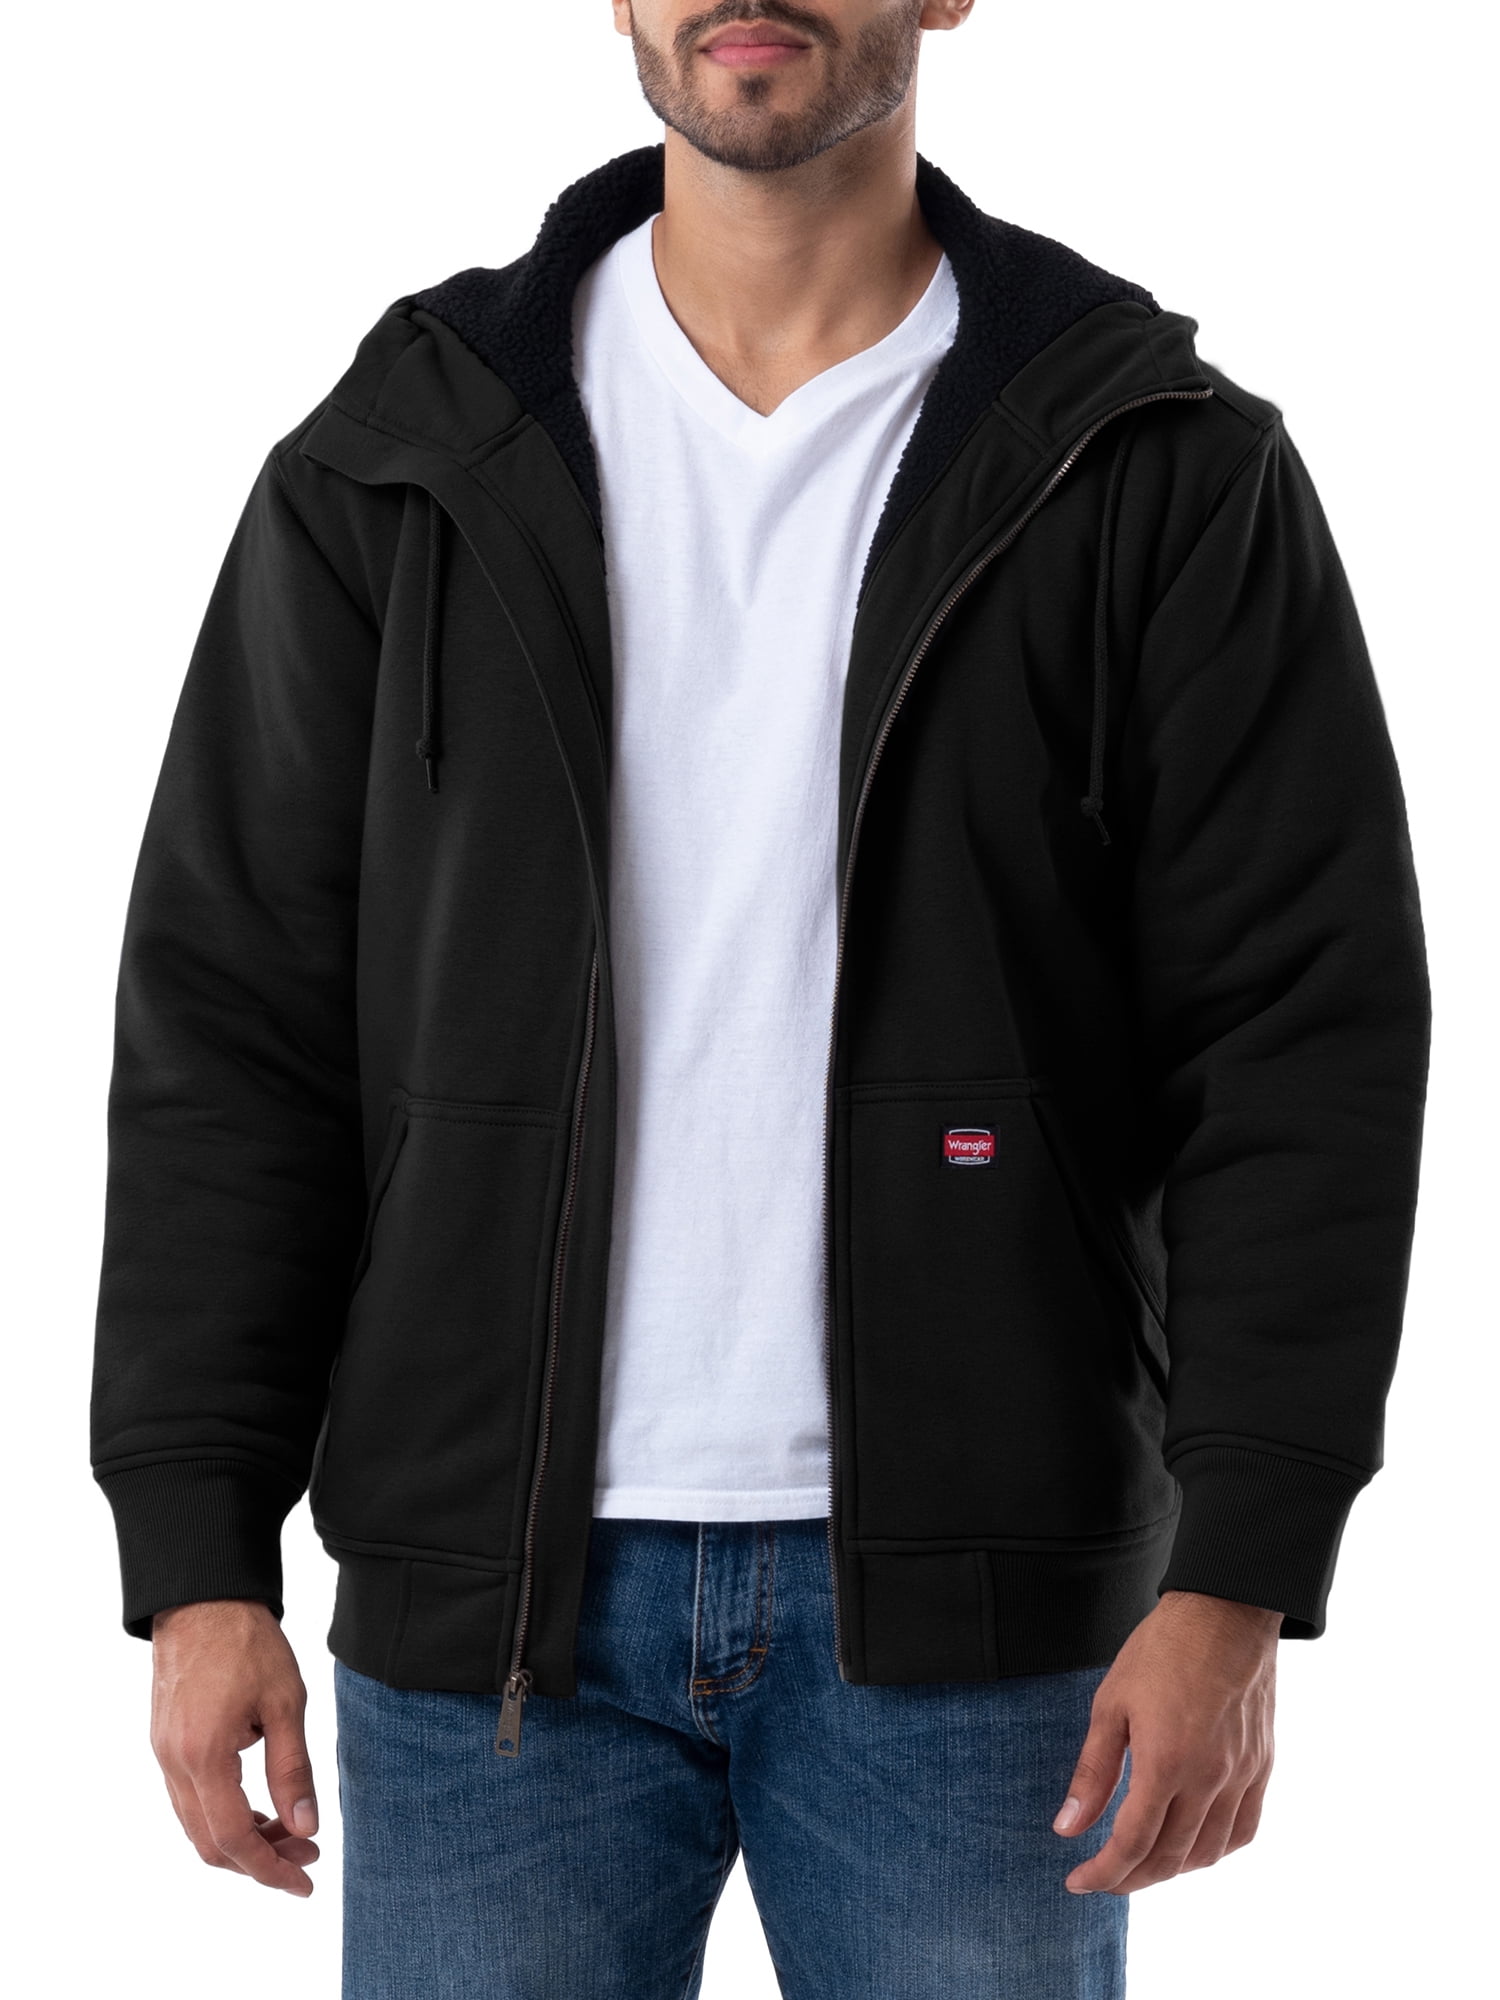 Wrangler Workwear Wrangler Men's Full Zip Fleece Hoodie, sizes S-5XL